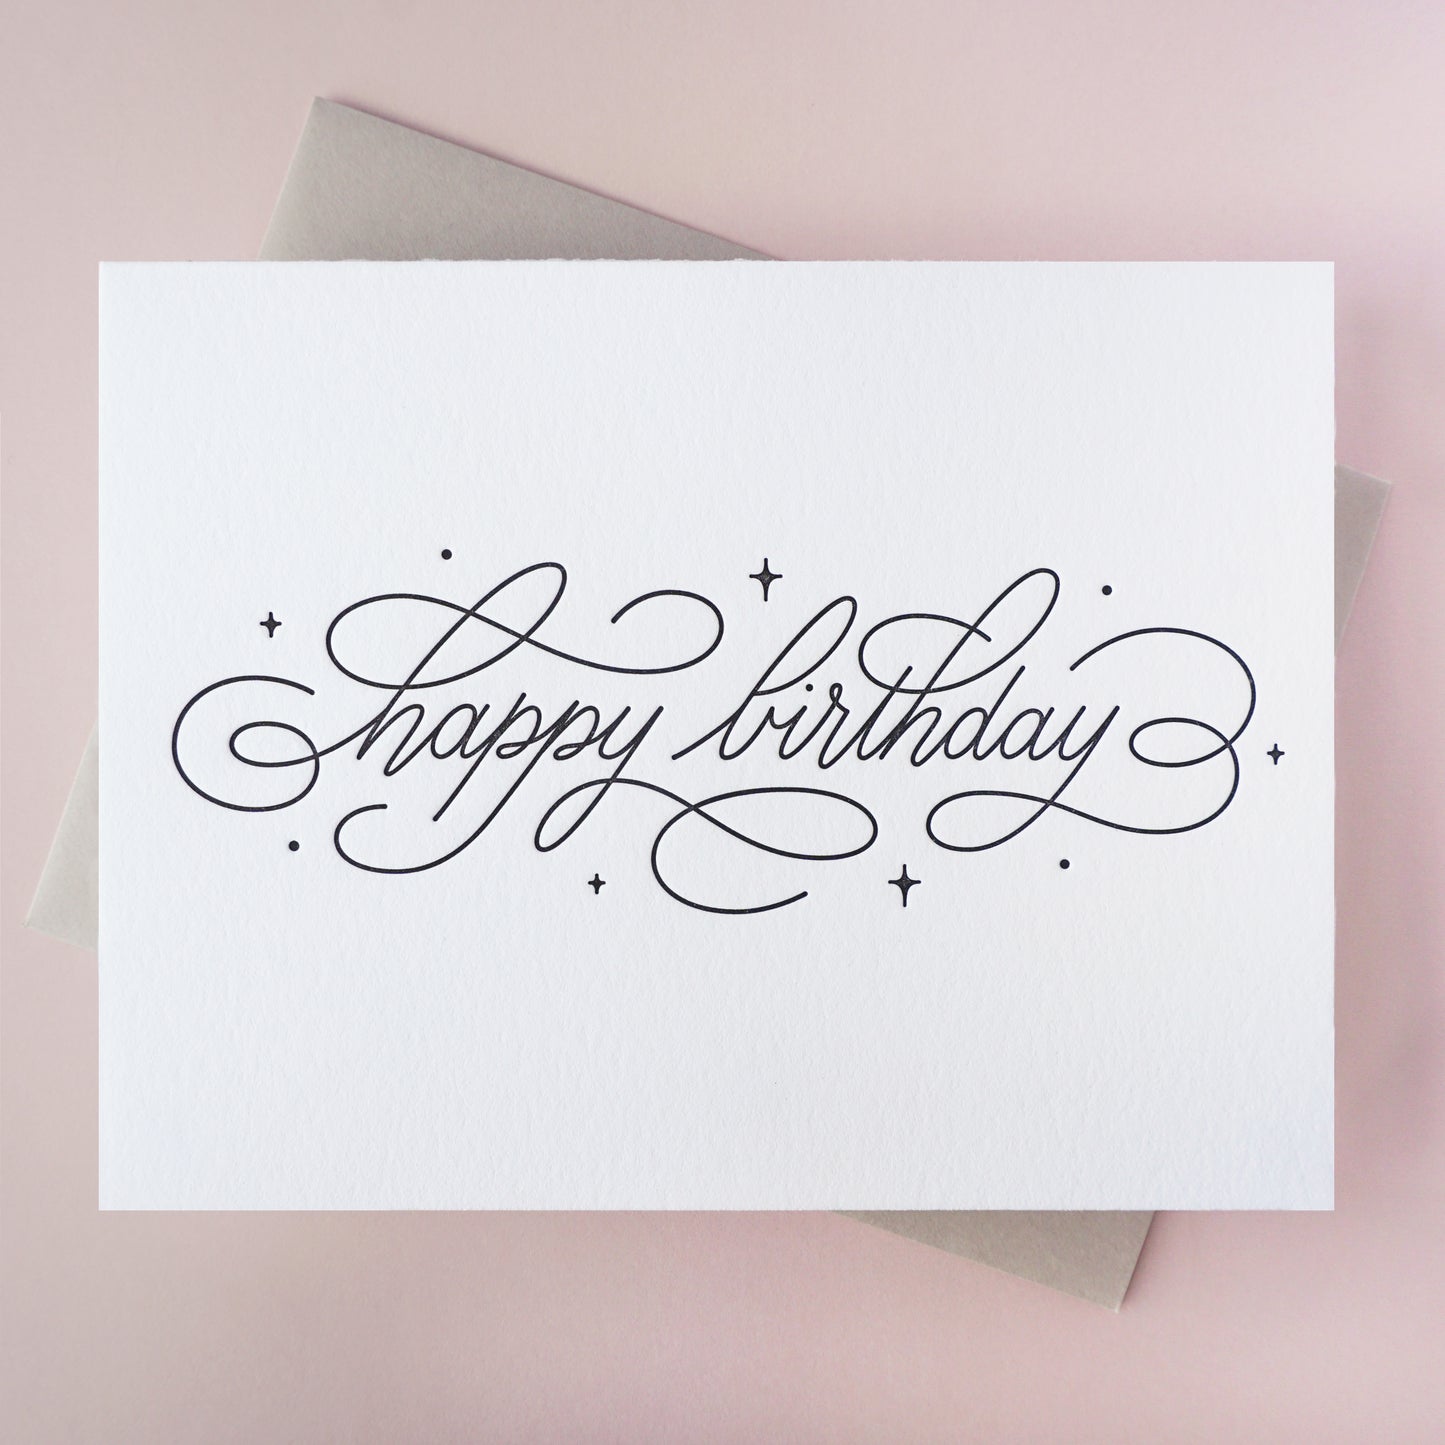 Carte letterpress avec le message calligraphié "Happy birthday" imprimé en noir et son enveloppe grise assortie 